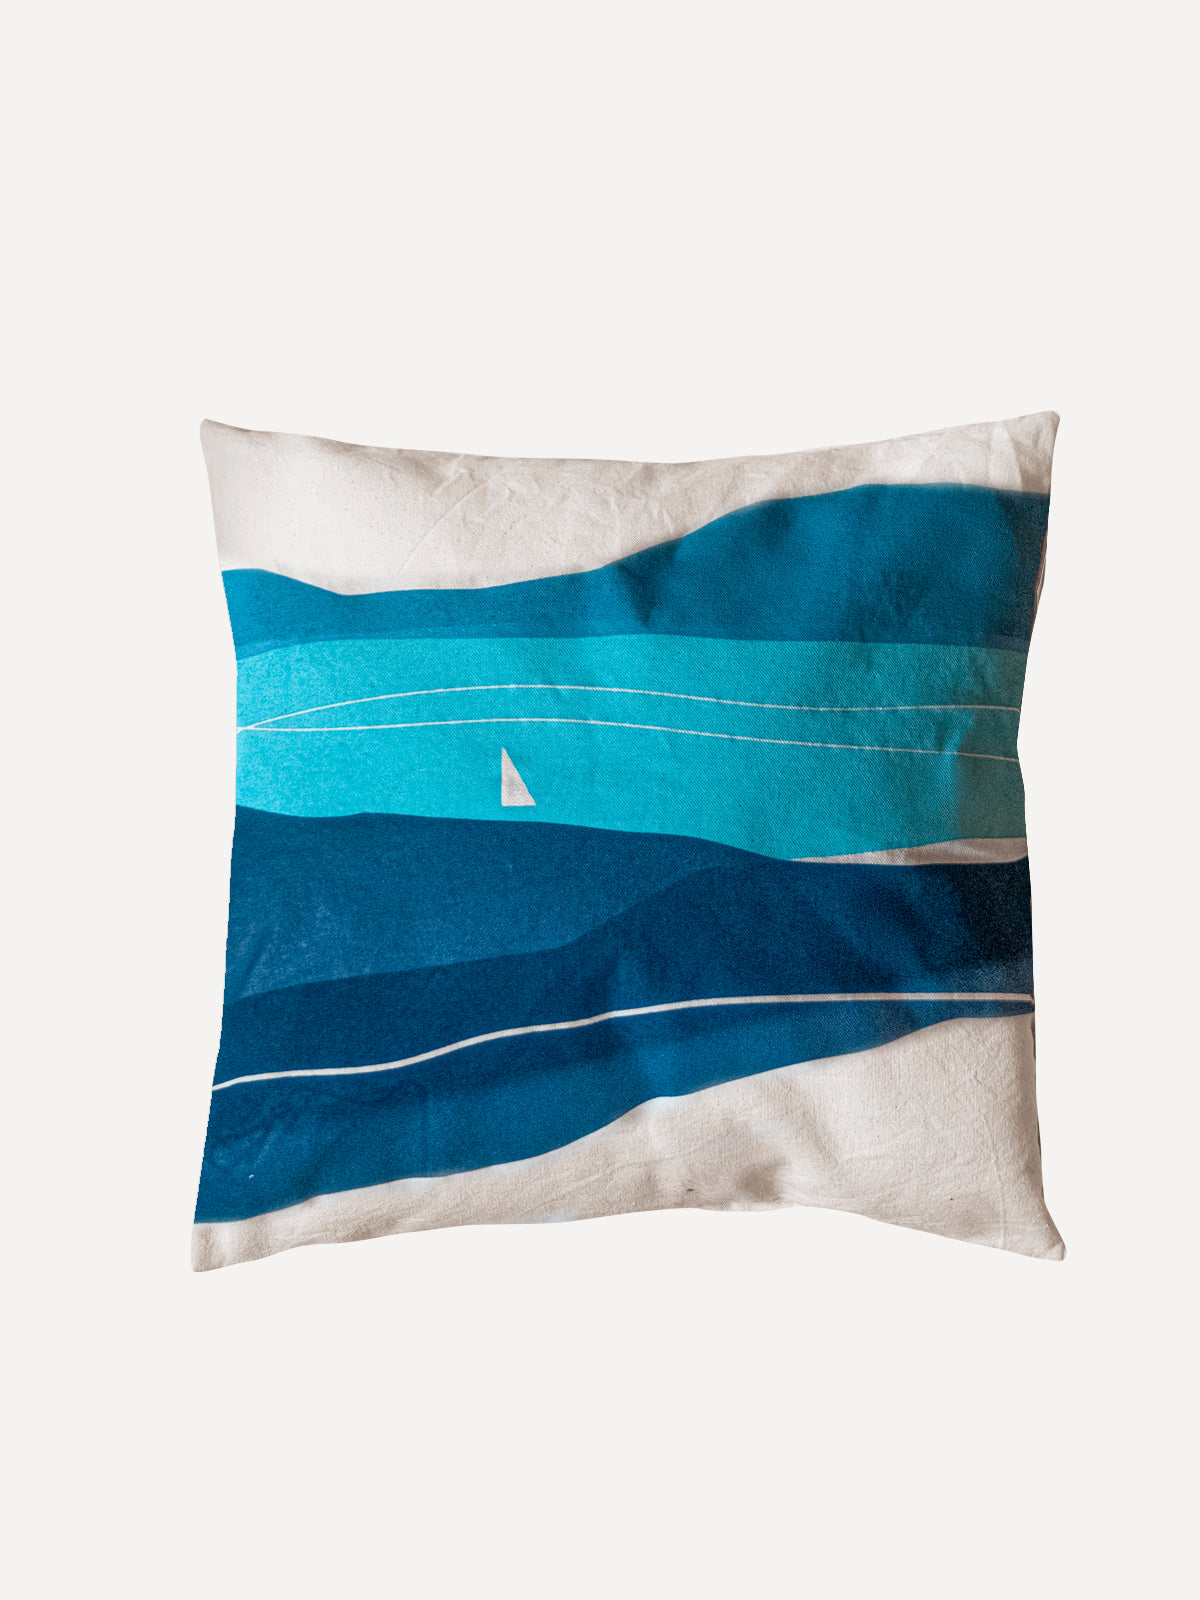 Pillowcase with Balaton pattern